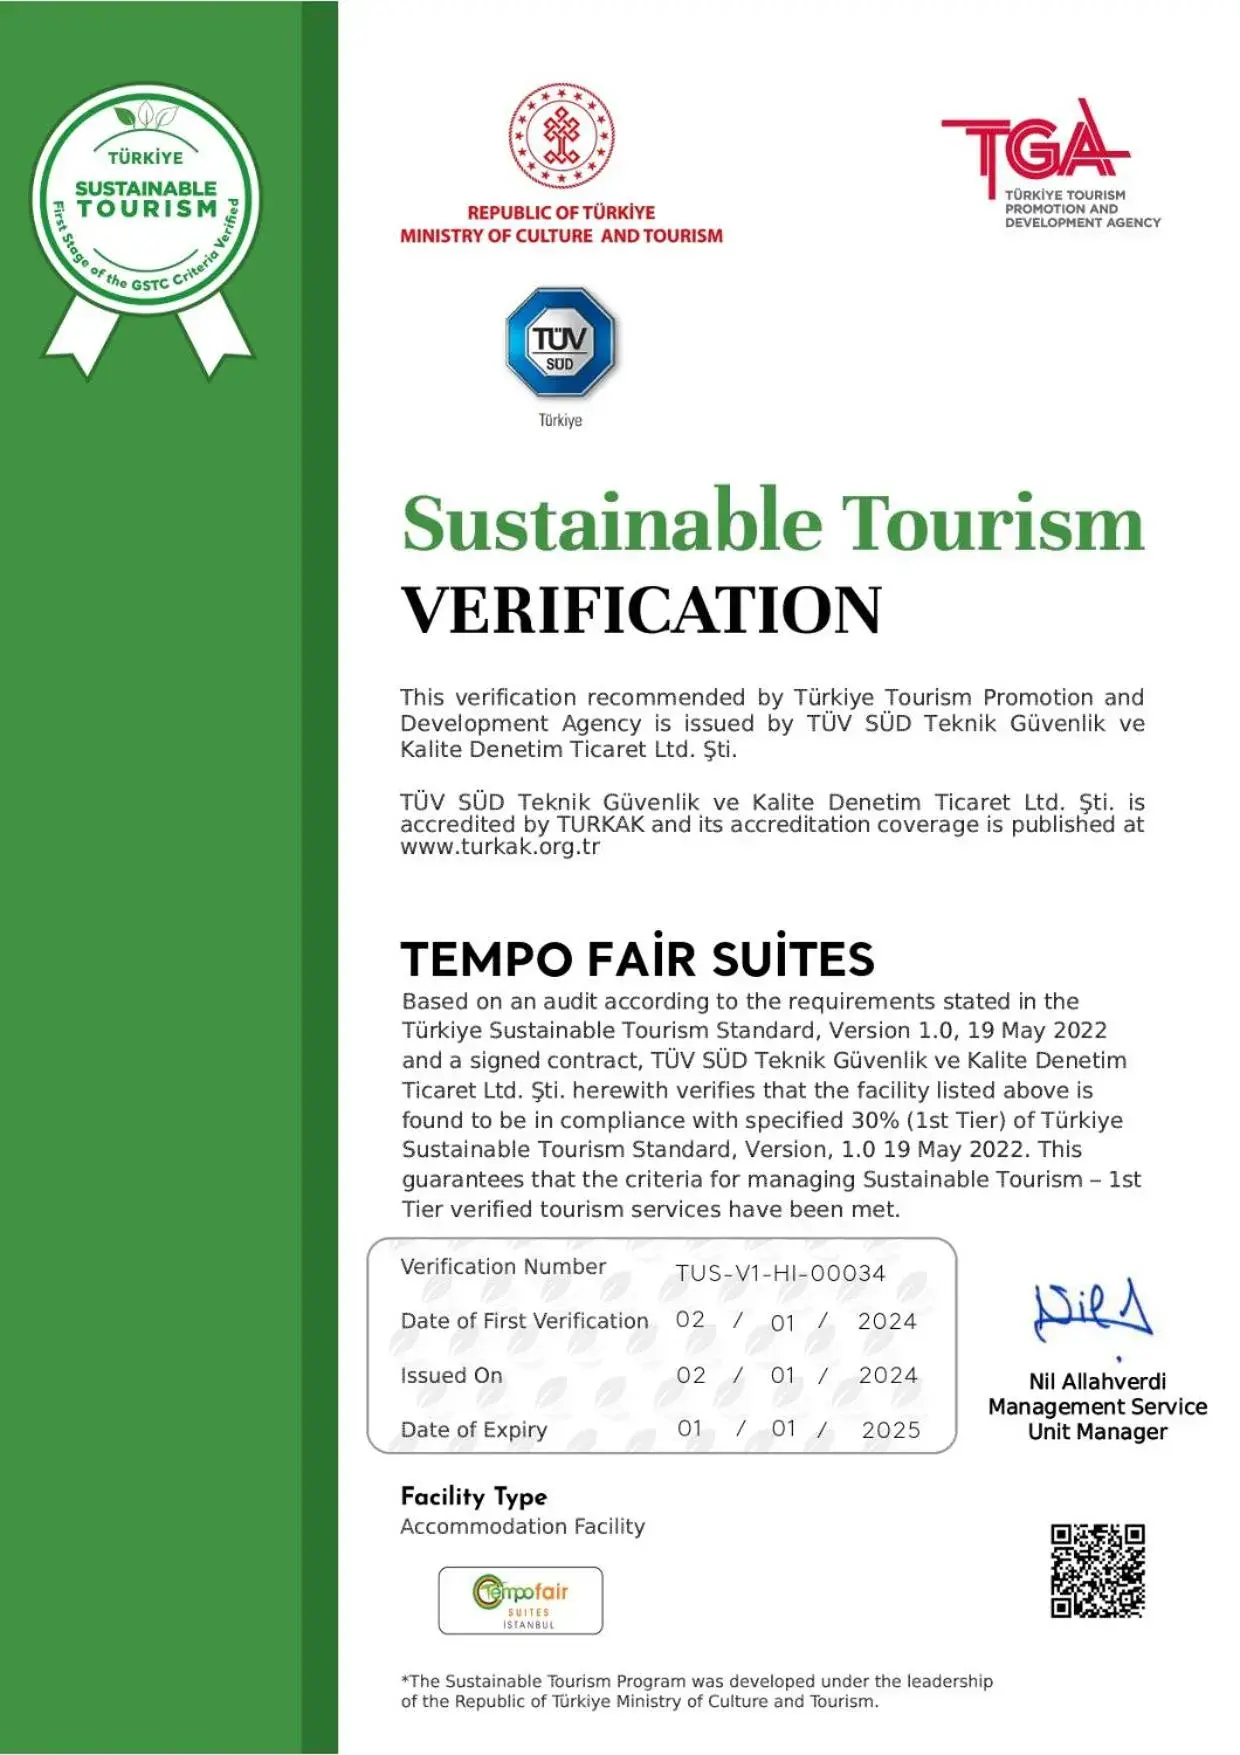 Certificate/Award in Tempo Fair Suites